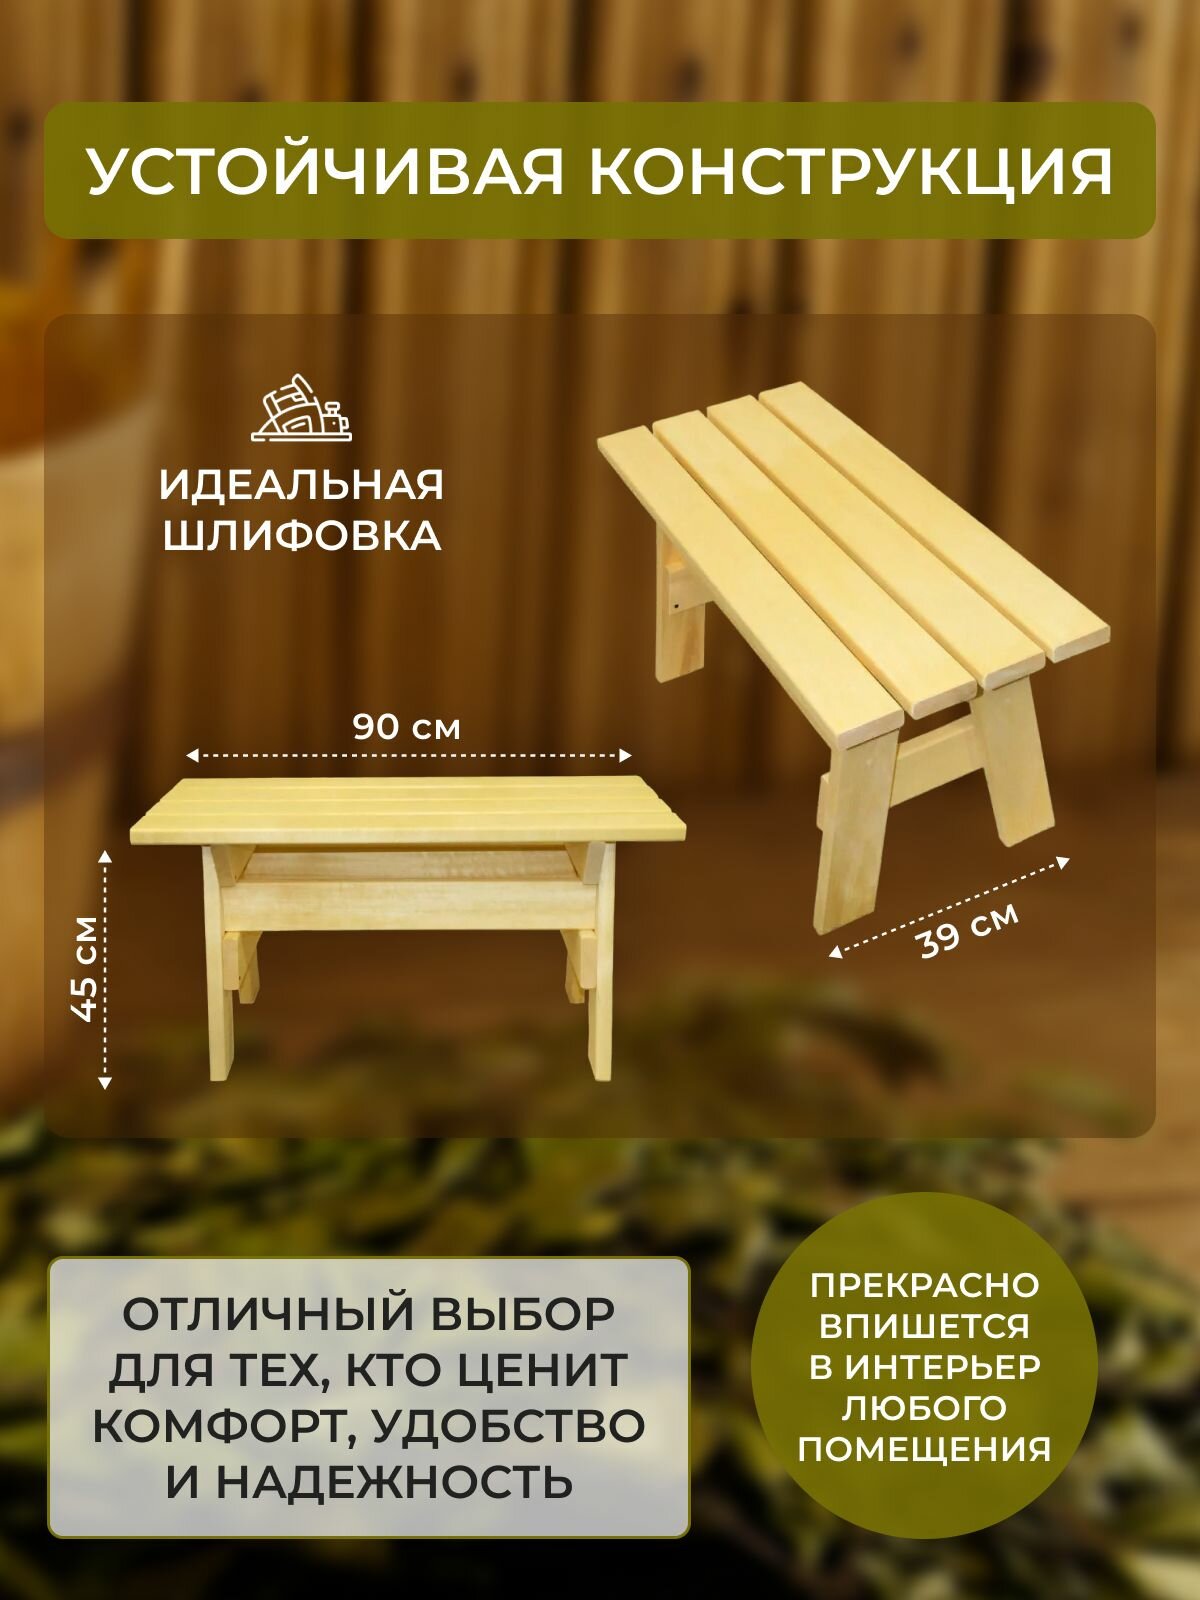 Скамейка деревянная 900*390*450